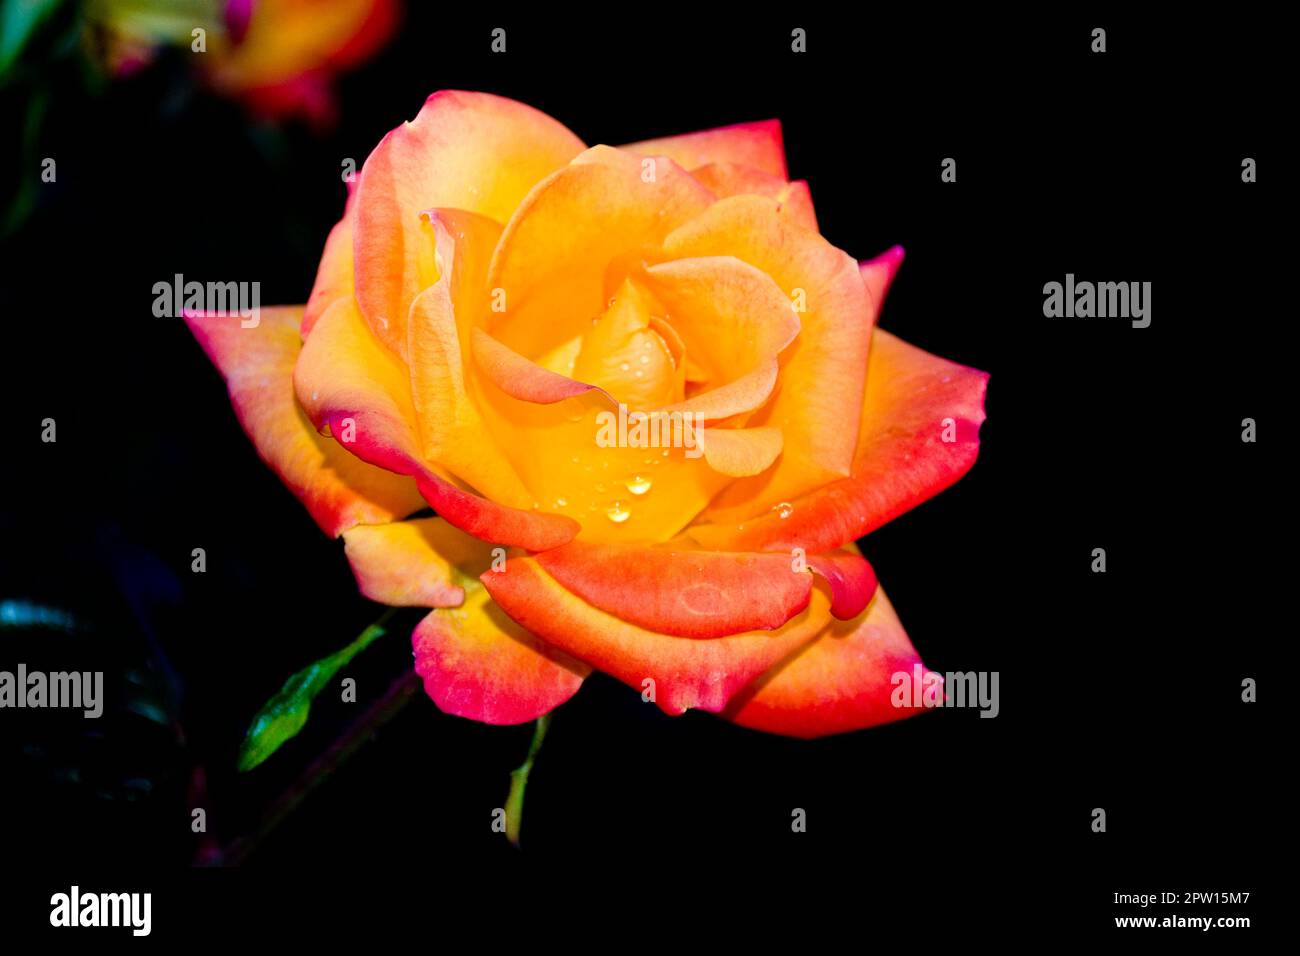 Leuchtende und romantische pfirsichfarbene Rose in orangefarbenen und roten Blütenblättern Stockfoto